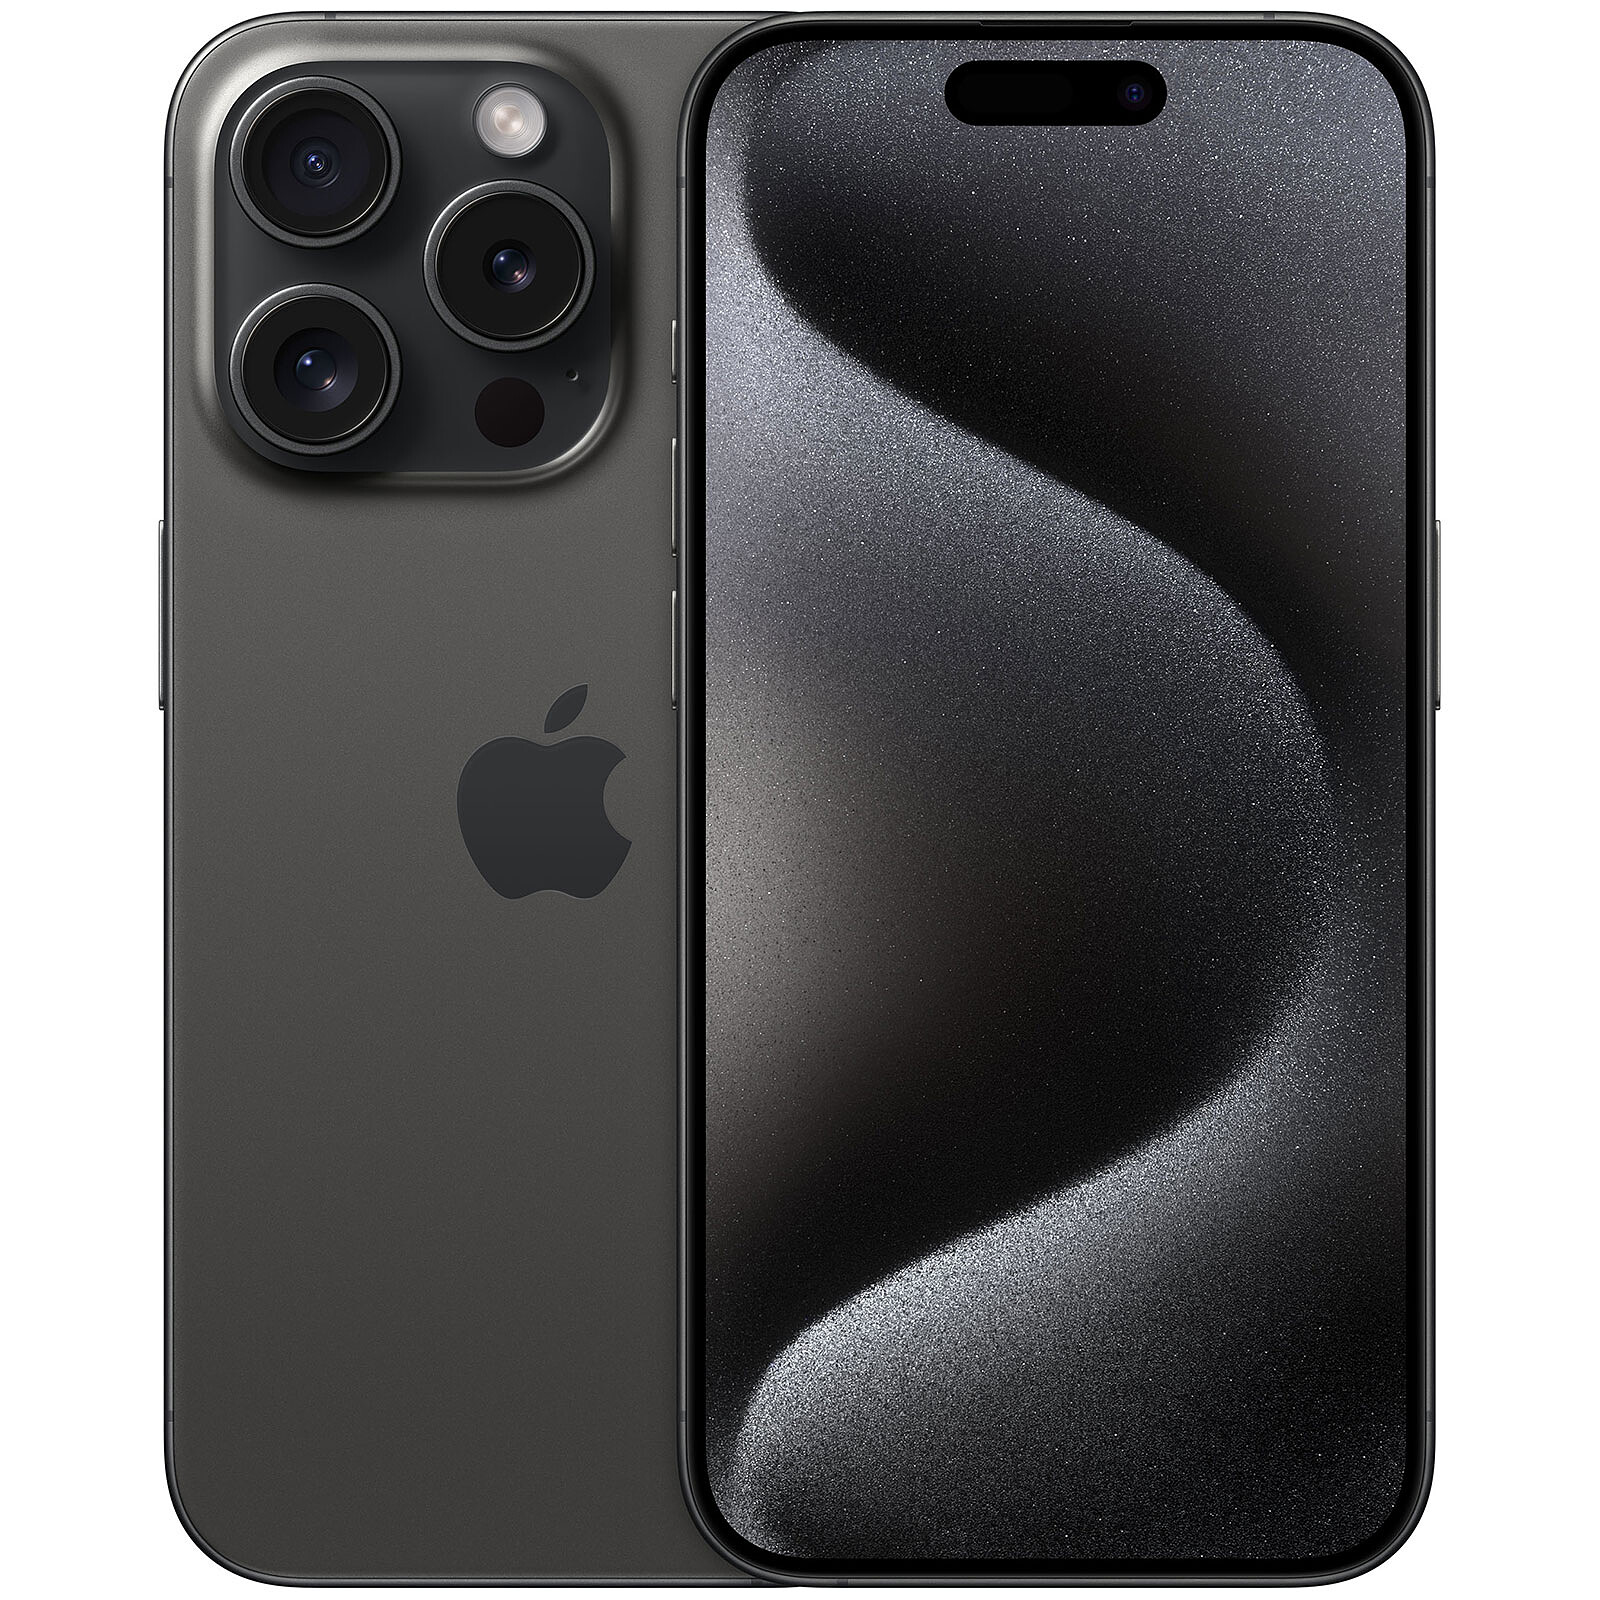 Apple Iphone X Negro 256GB Reacondicionado Grado A + Audifonos Inalambricos  + Funda